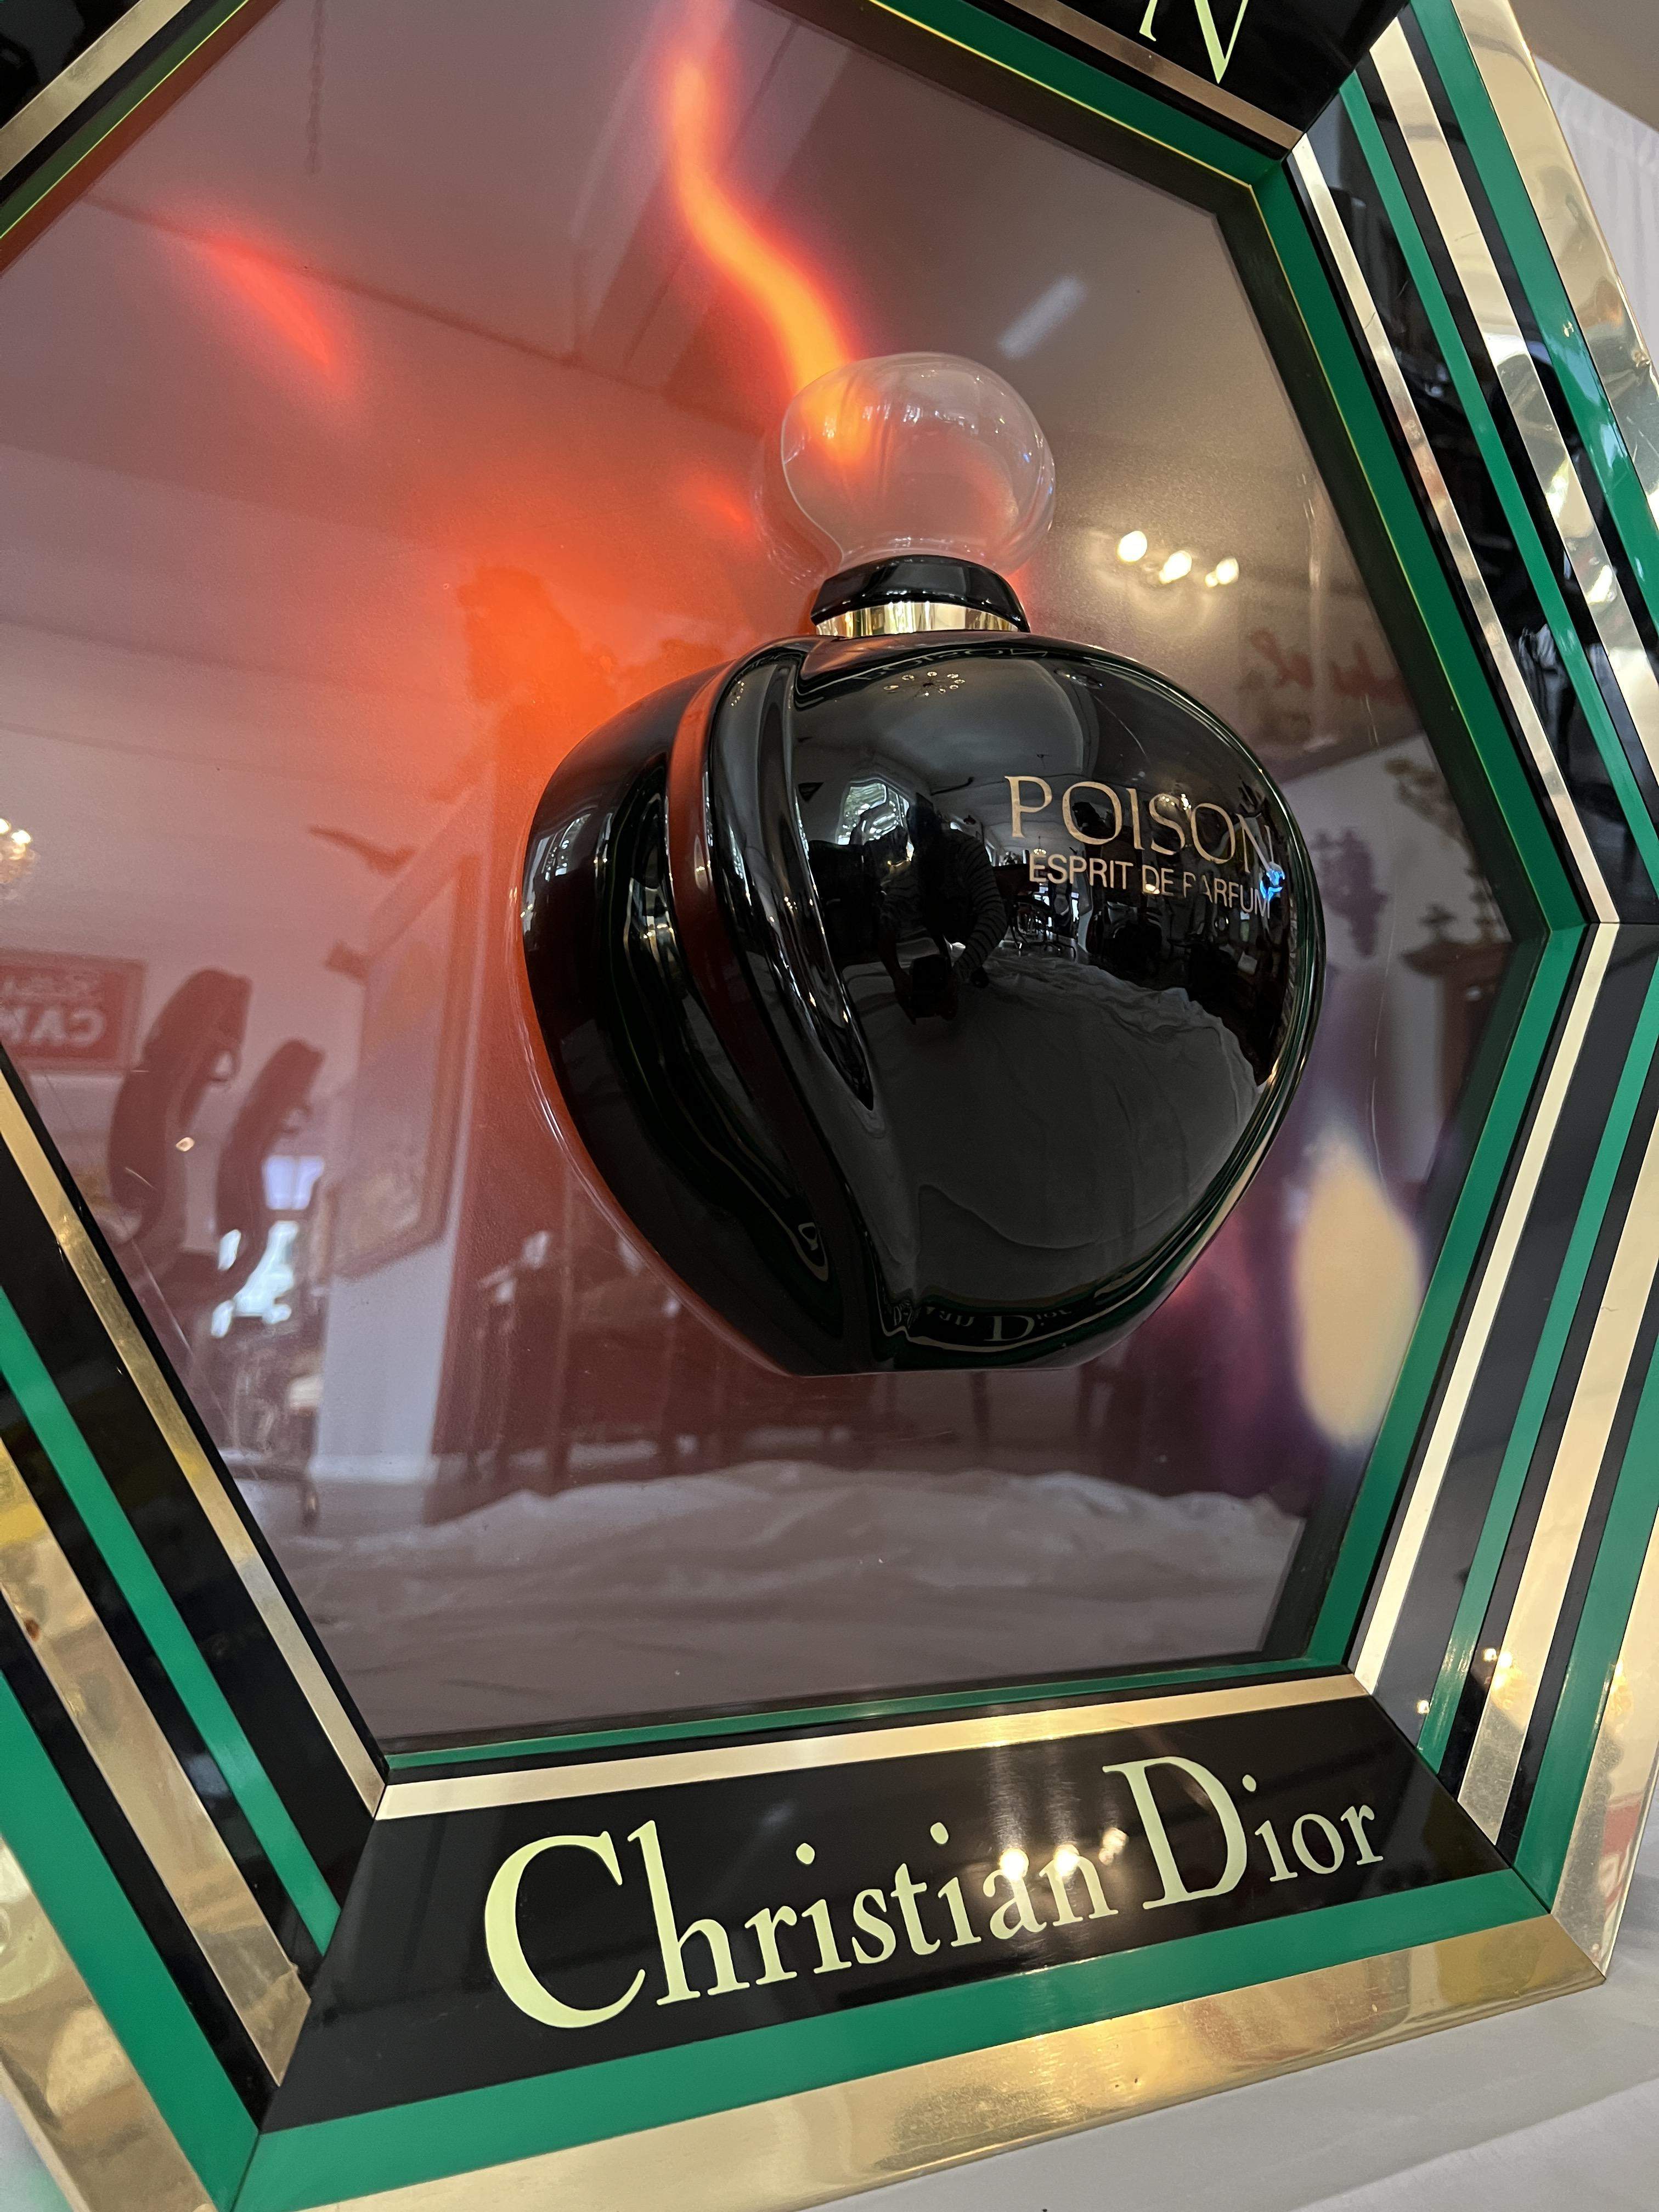 Leuchtkasten Christion Dior Poison Vintage